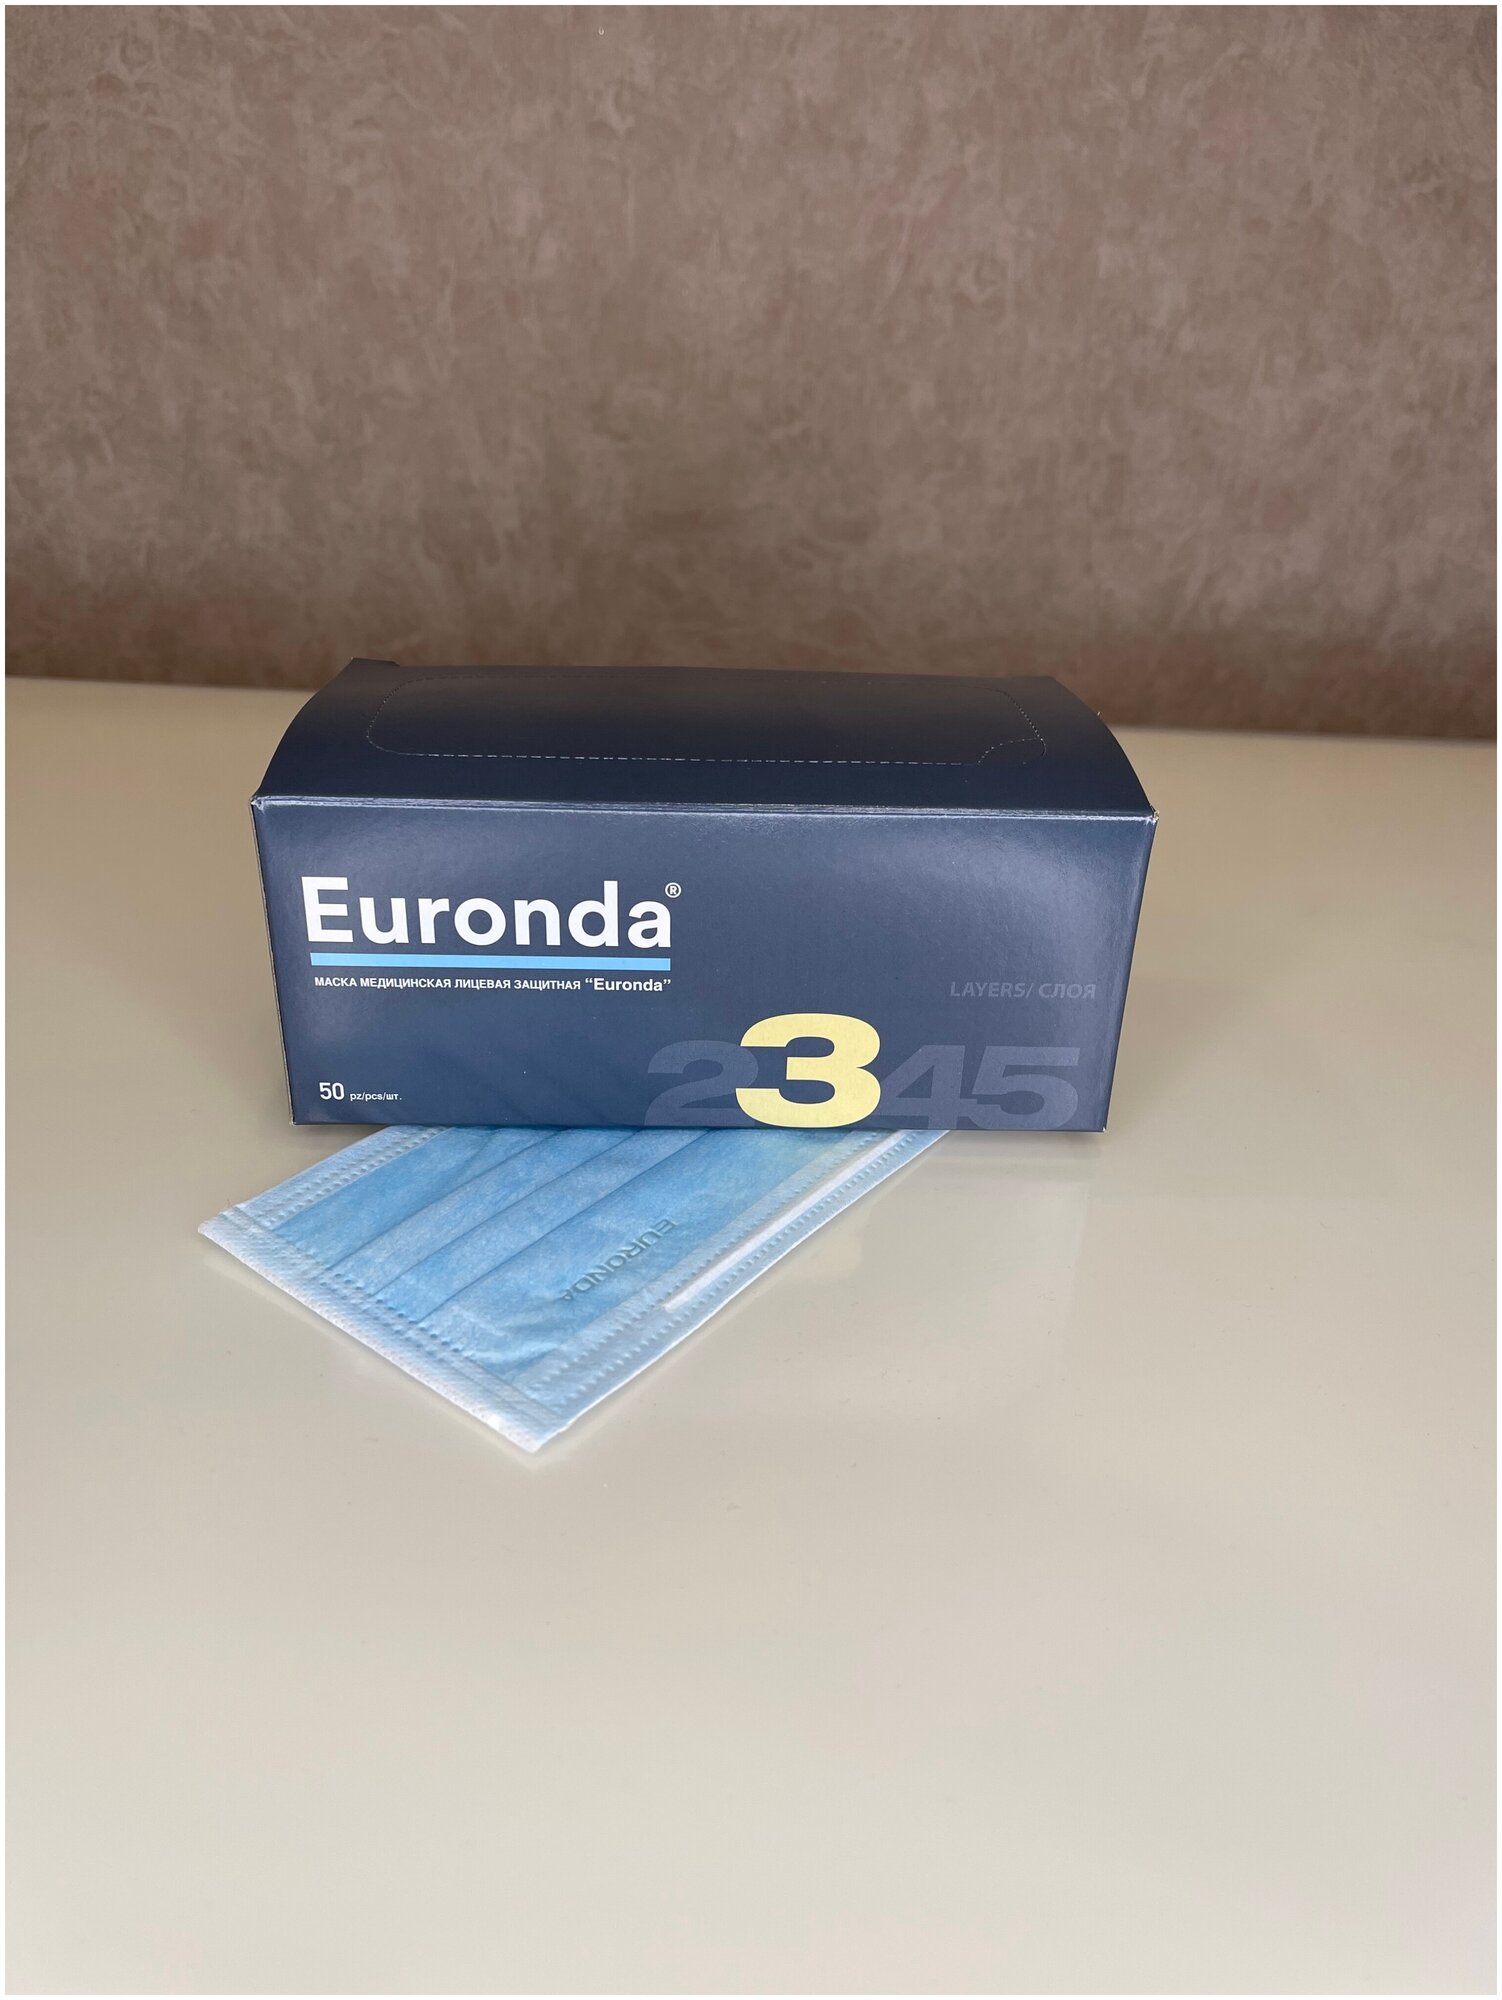 Маска медицинская Euronda Monoart трехслойная - голубой, 50 шт. в упаковке, 5 уп.